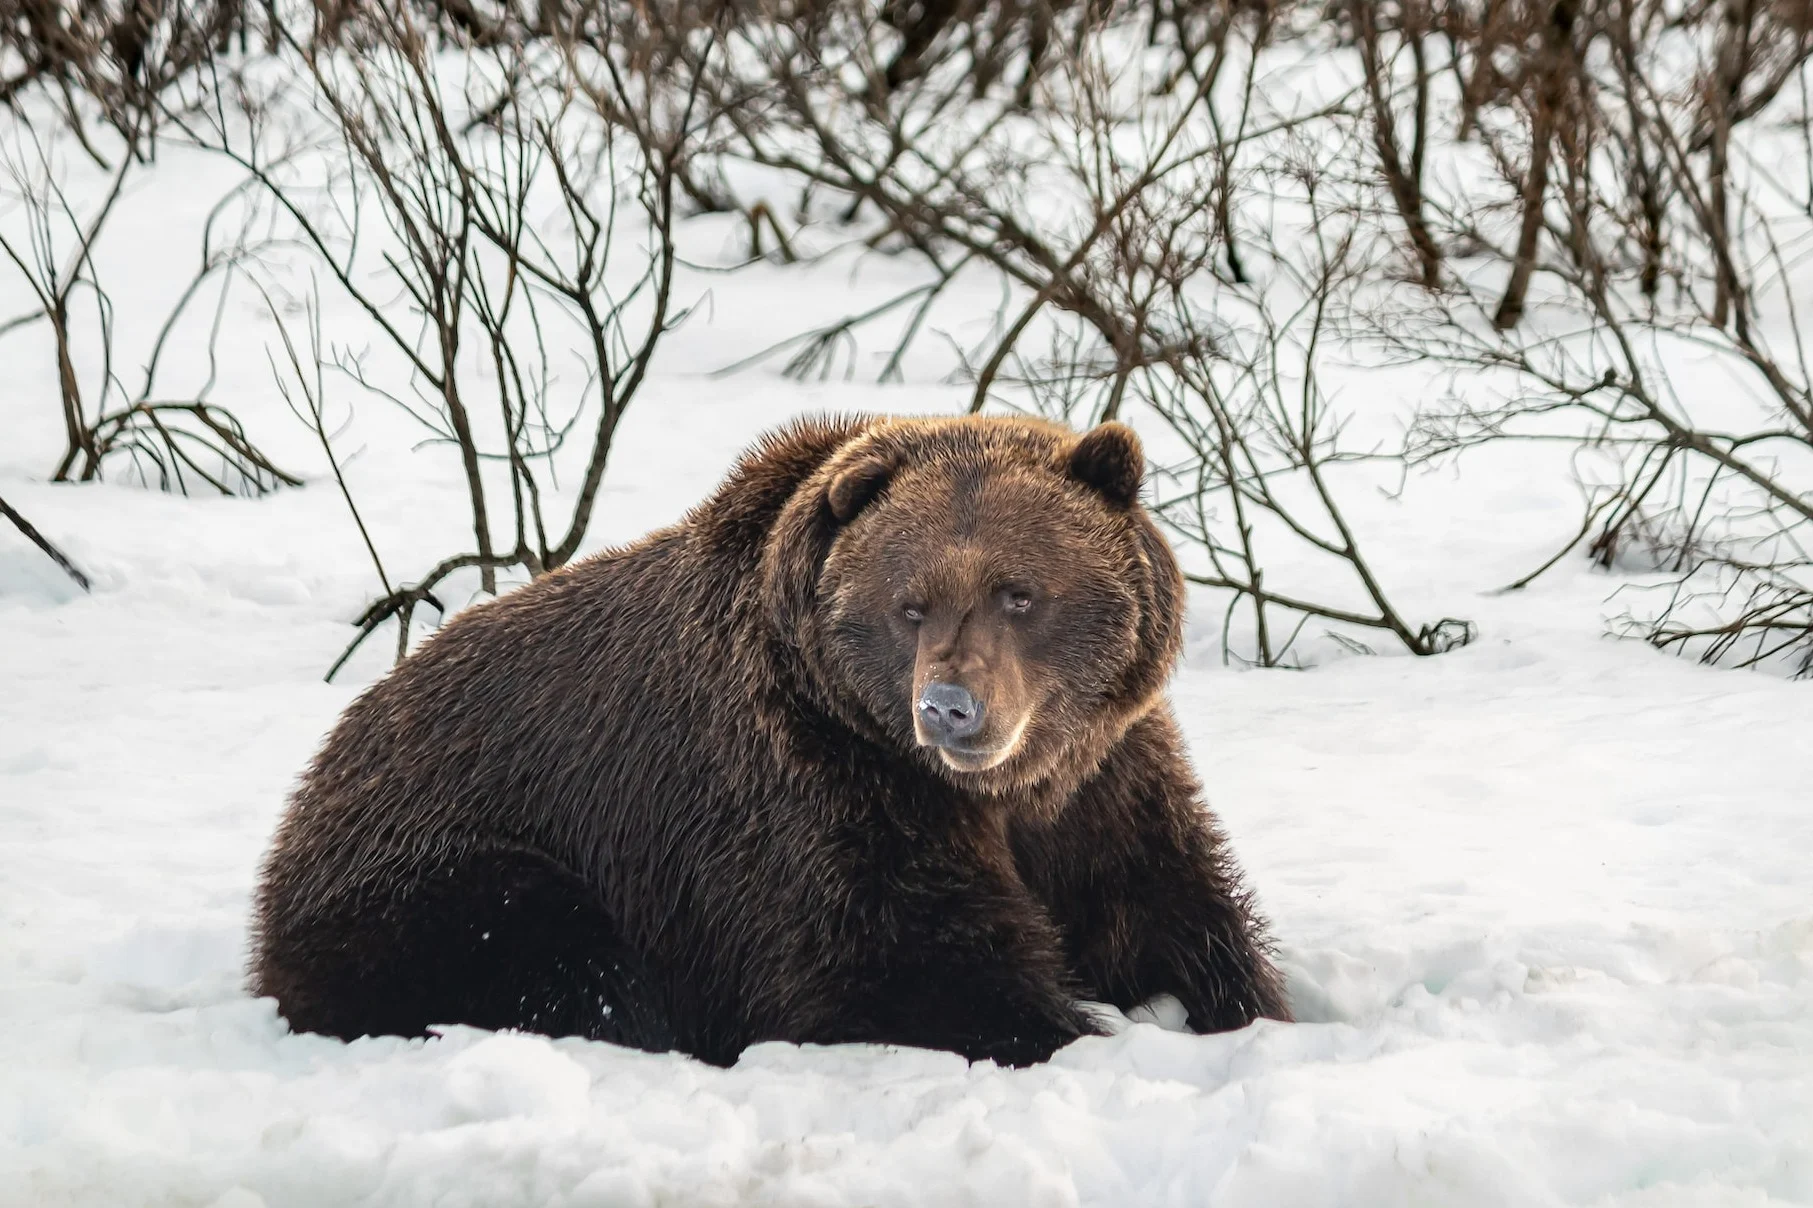 Des ours confus se réveillent en janvier